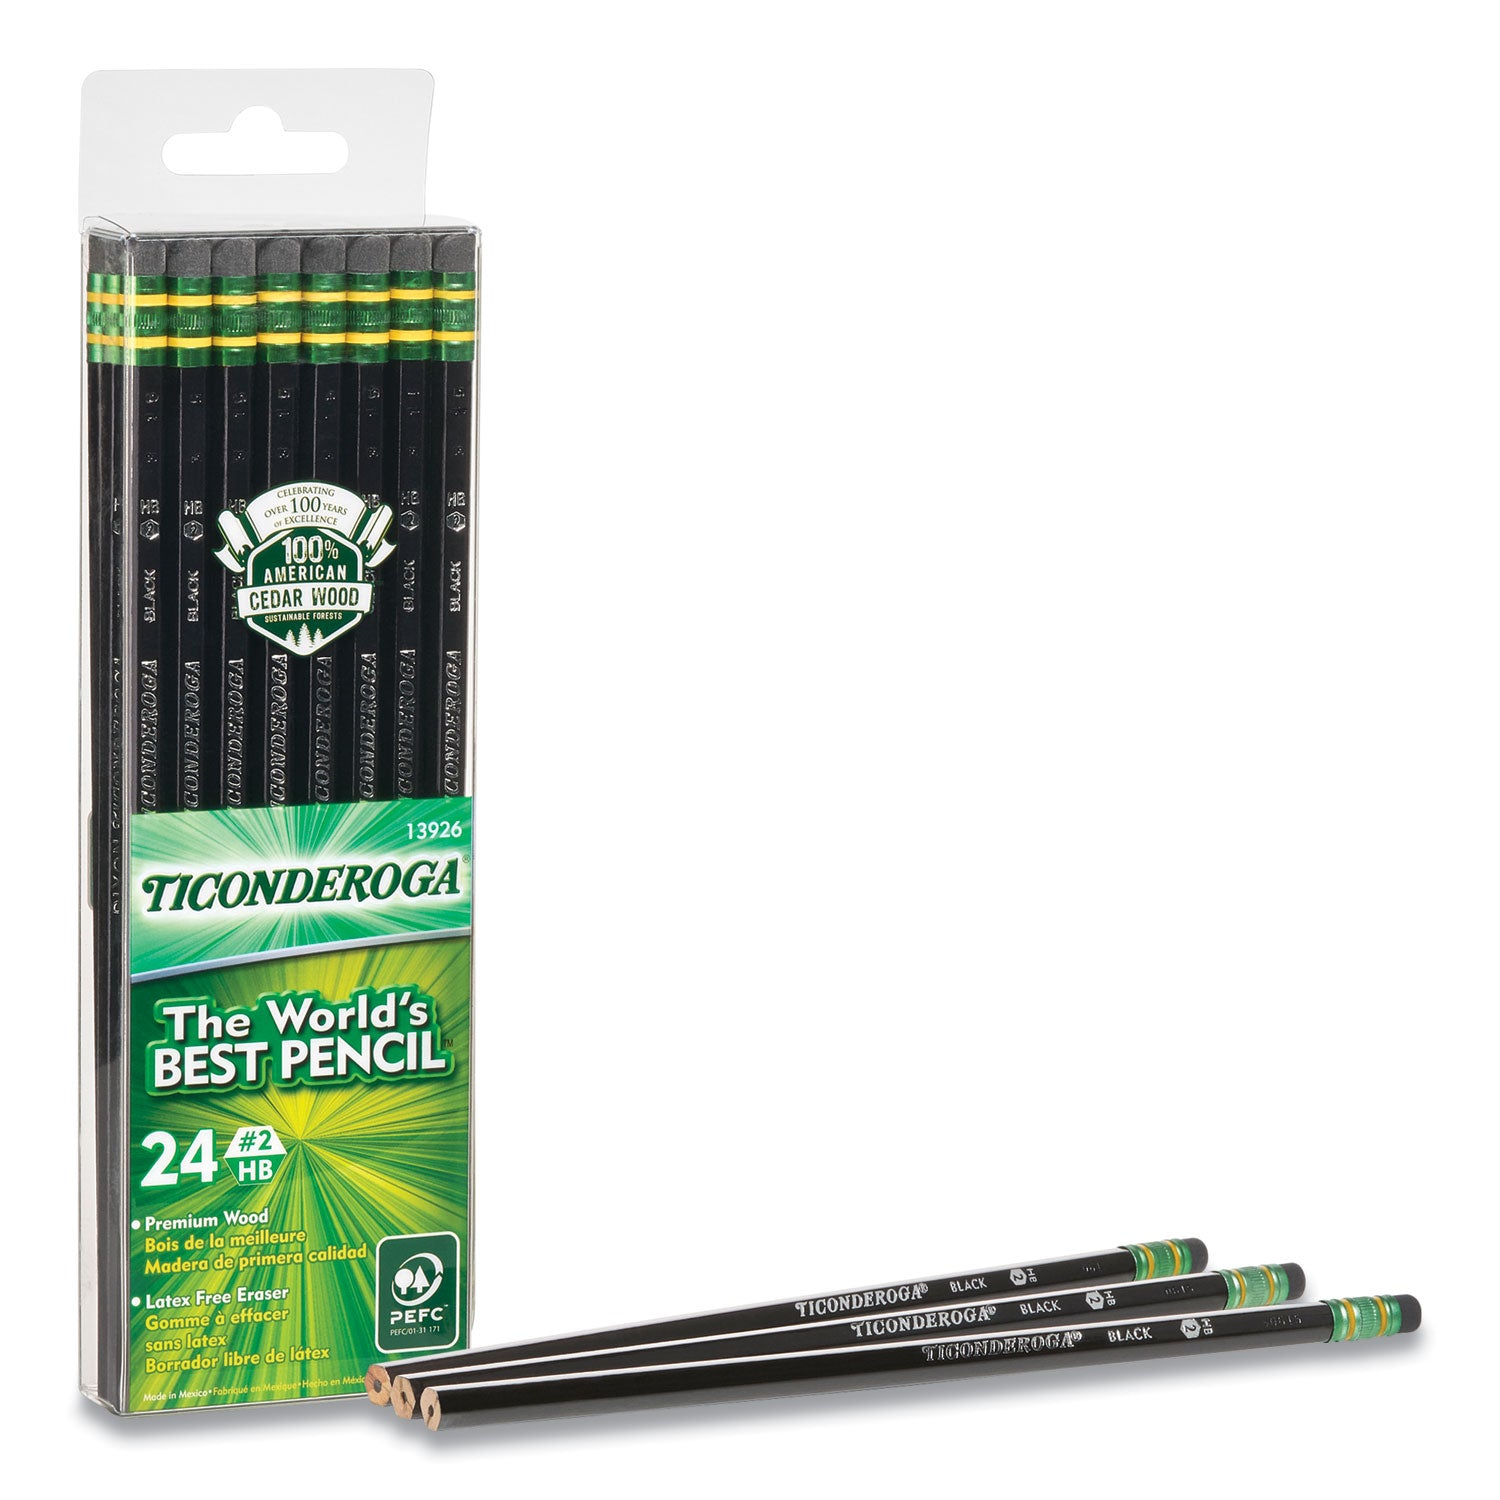 pencils-hb-#2-black-lead-black-barrel-24-pack_dix13926 - 2